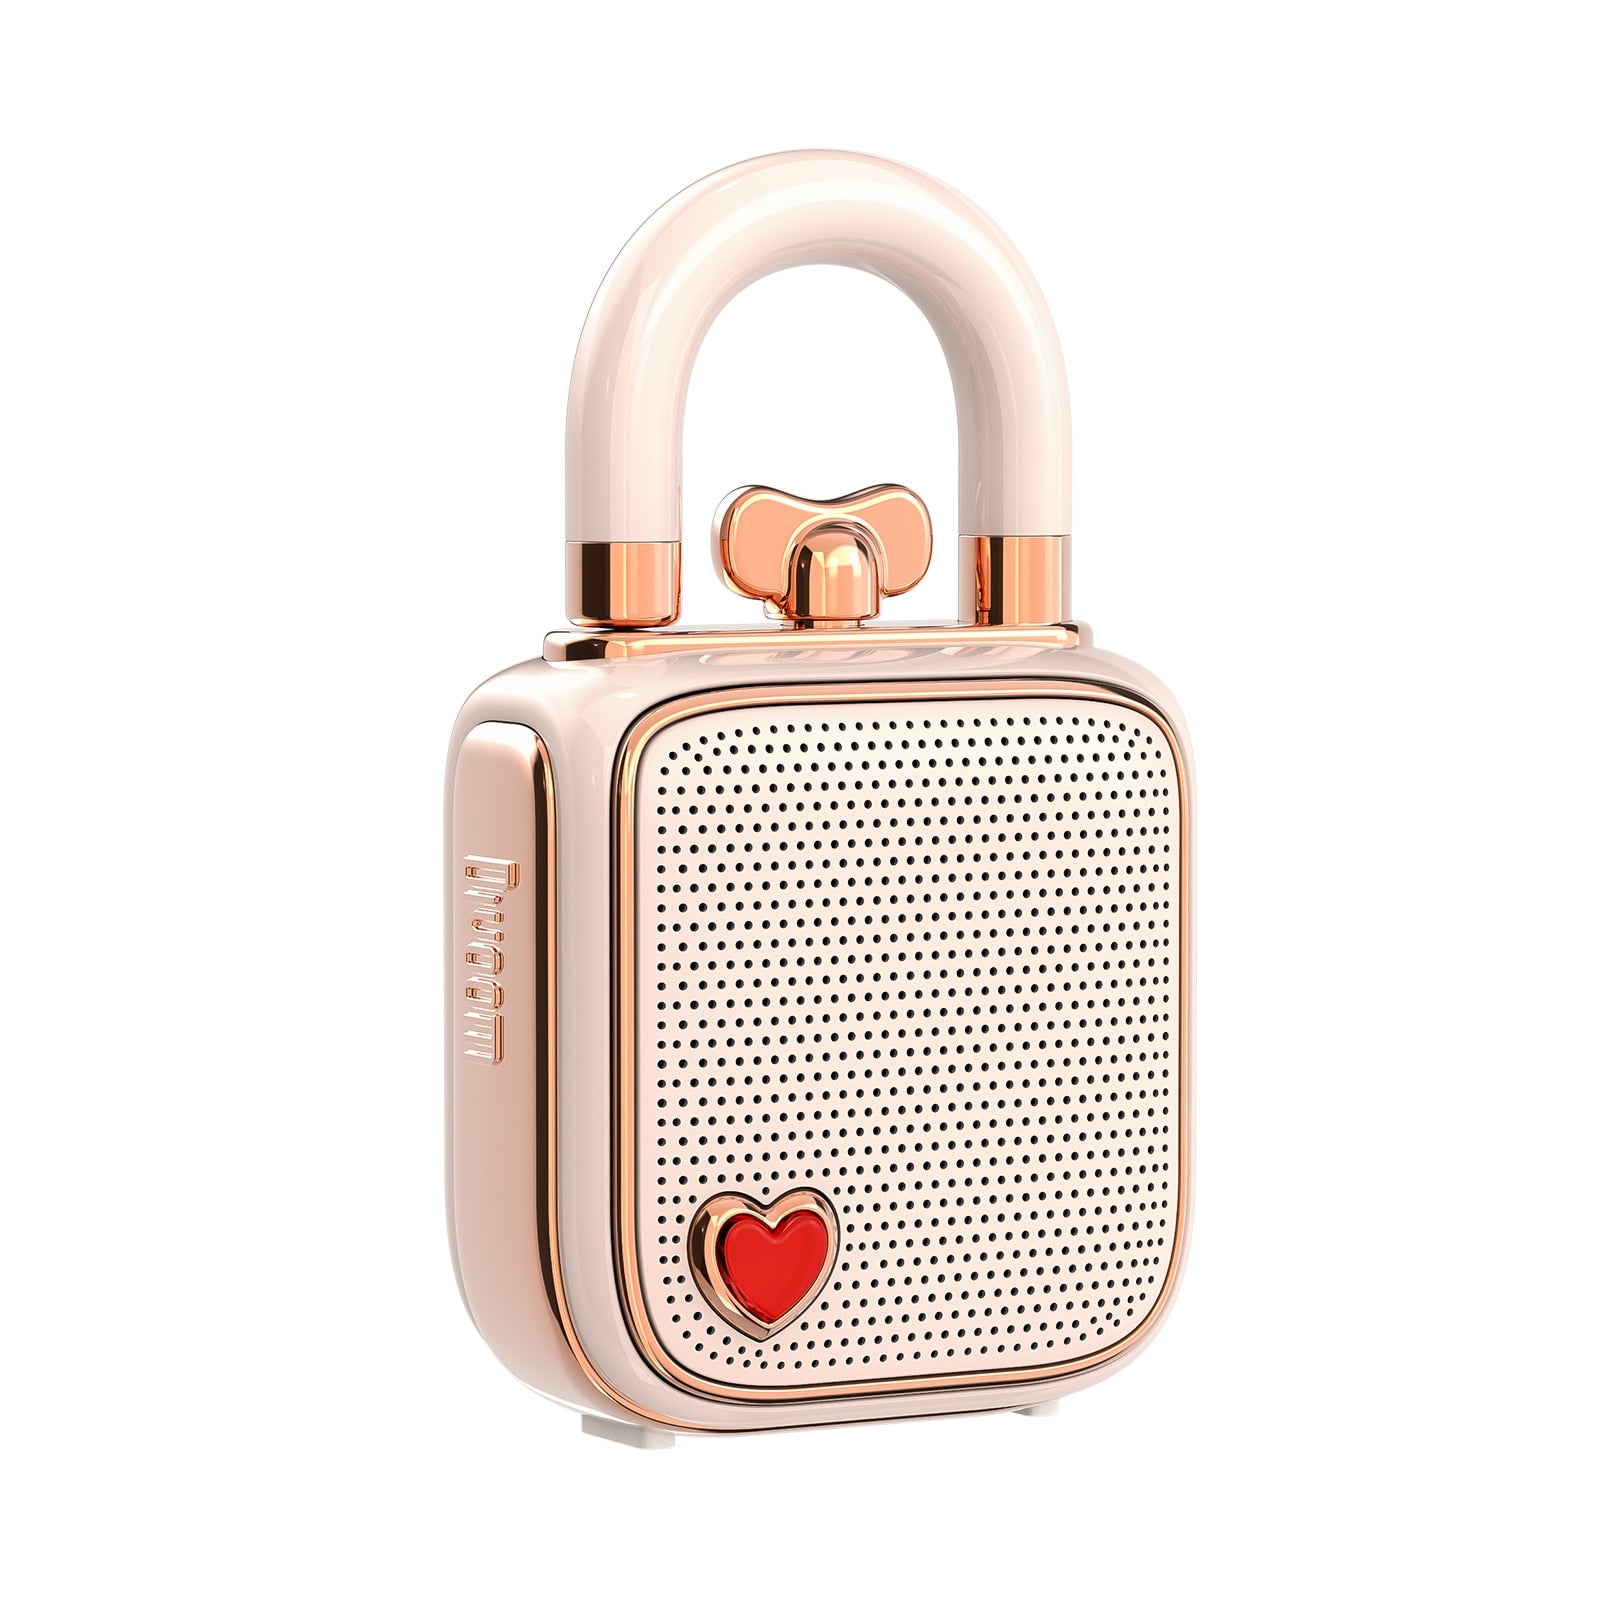 Divoom LoveLock Mini Bluetooth Speaker - Cute and Portable Audio